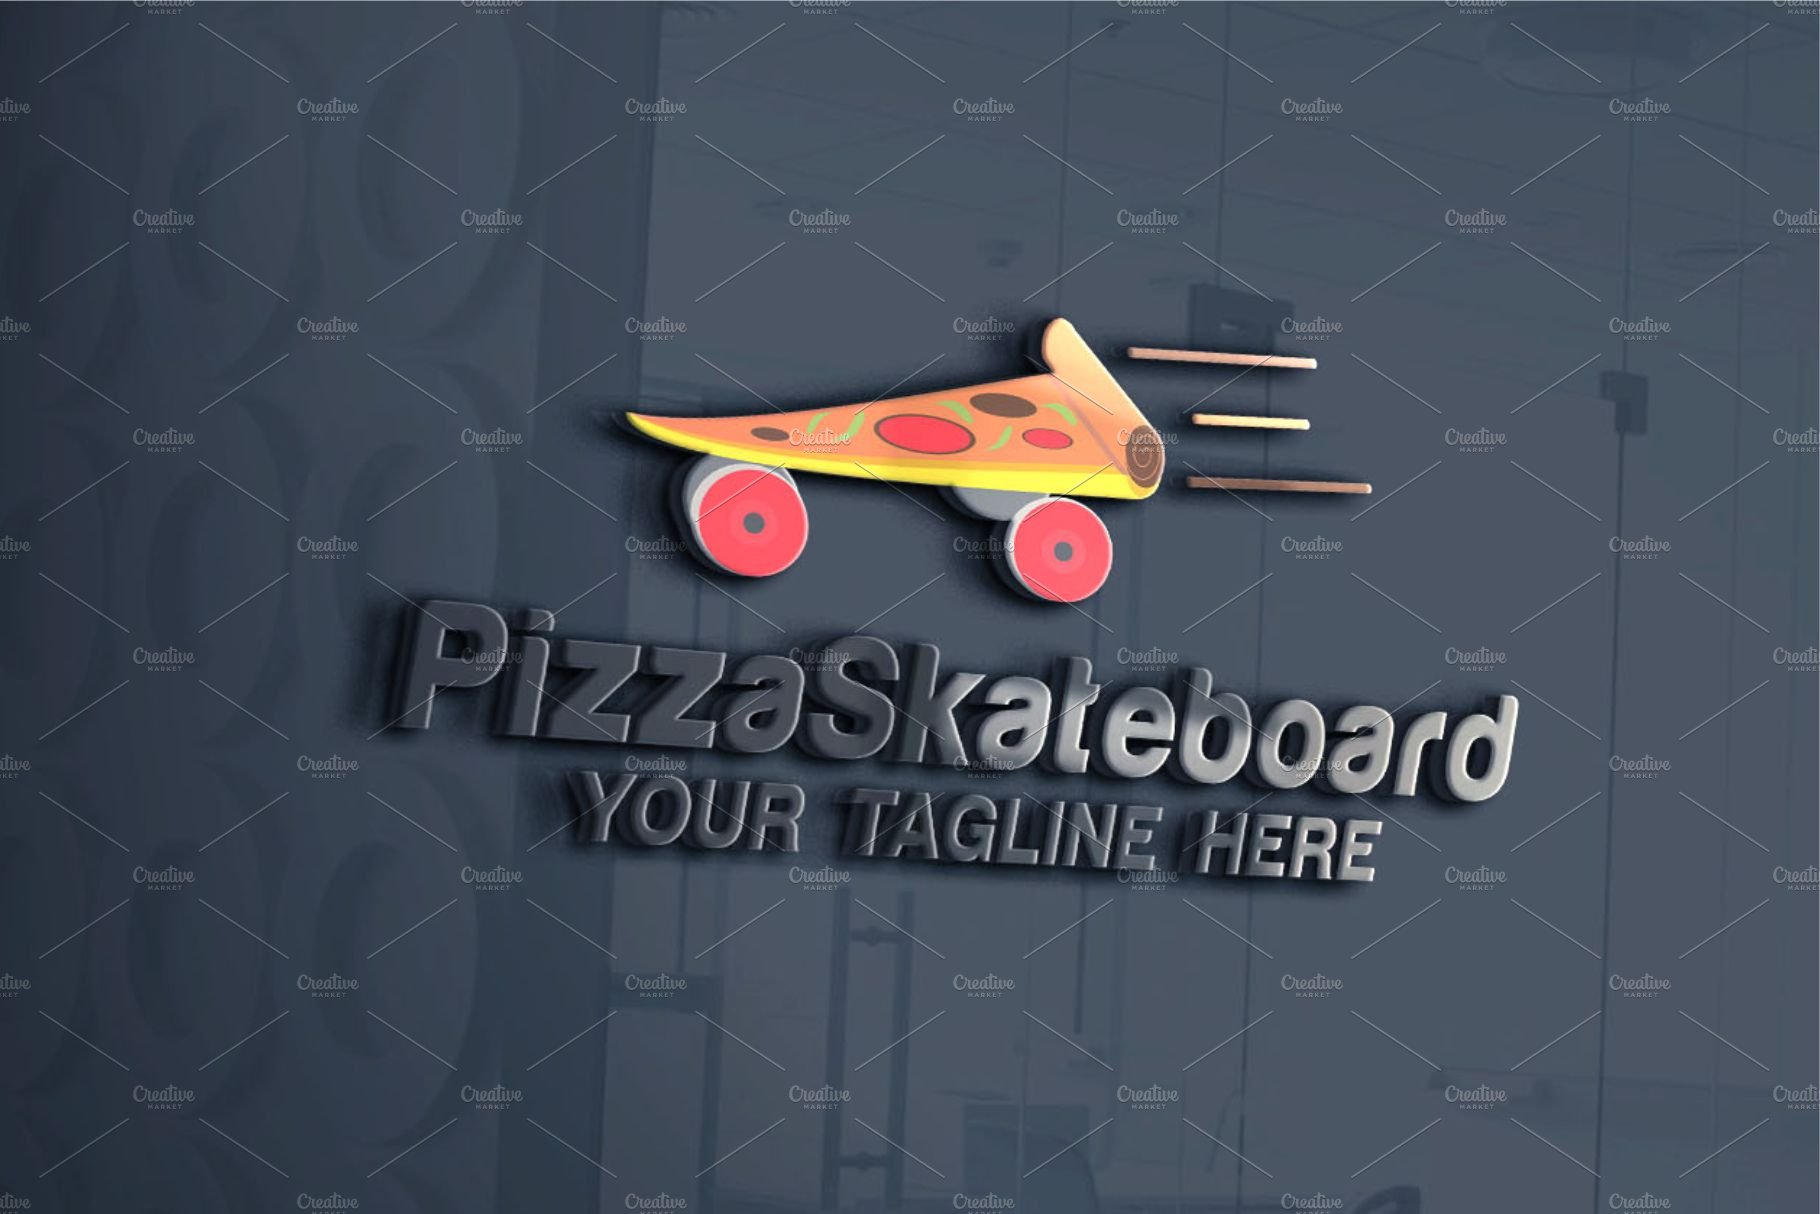 Skate Pizza logo preview image.